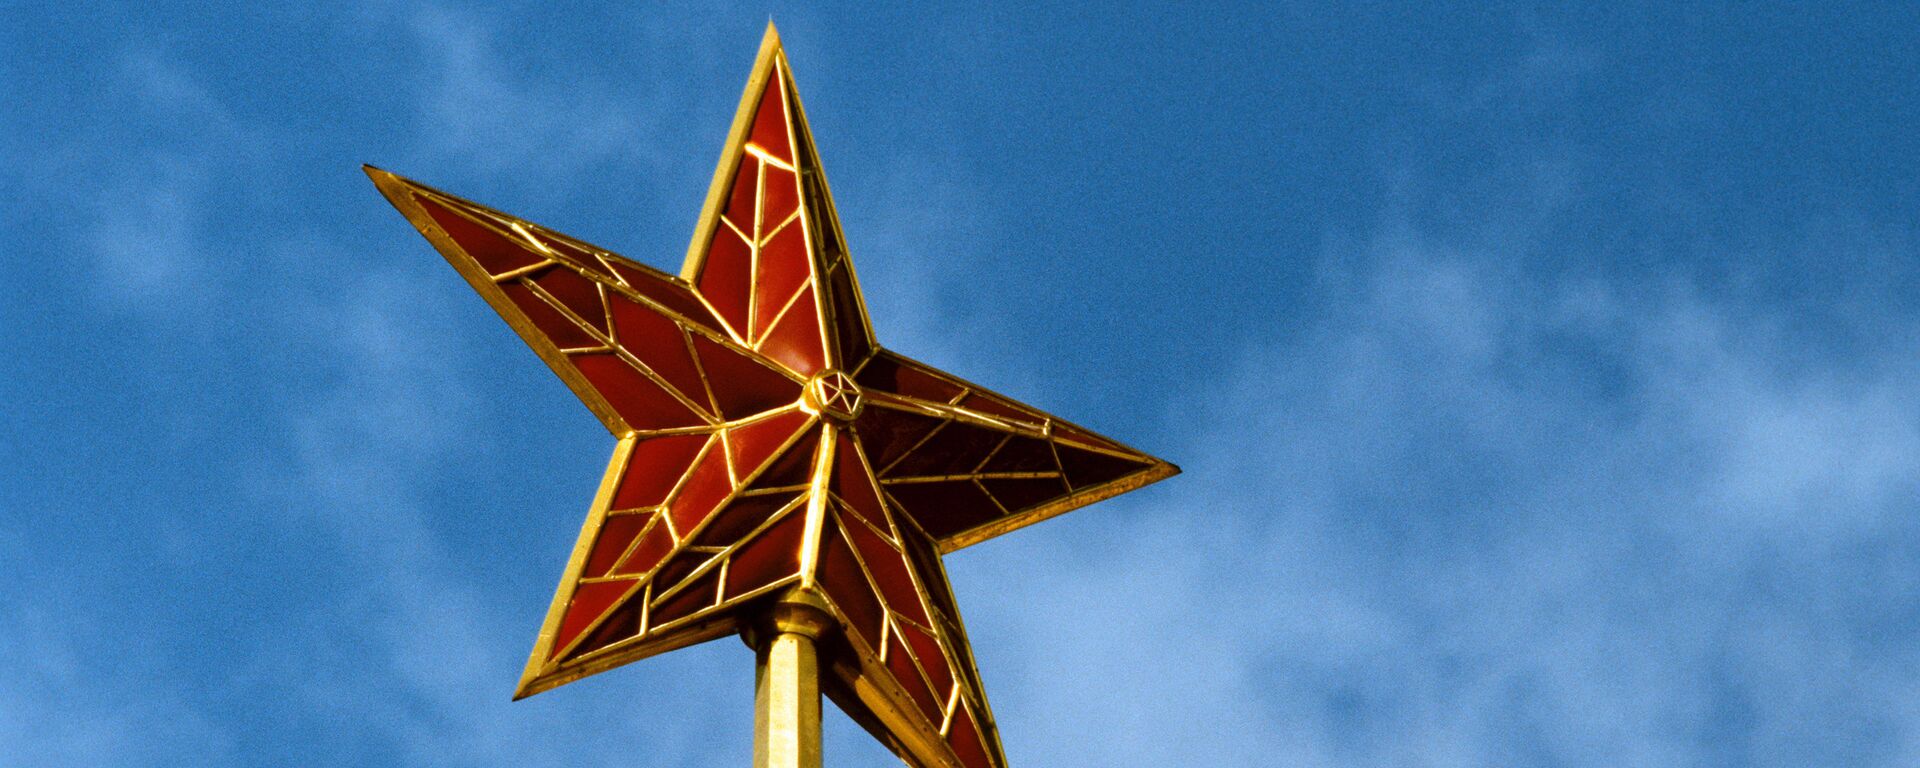 Những ngôi sao Điện Kremlin - Sputnik Việt Nam, 1920, 25.04.2022